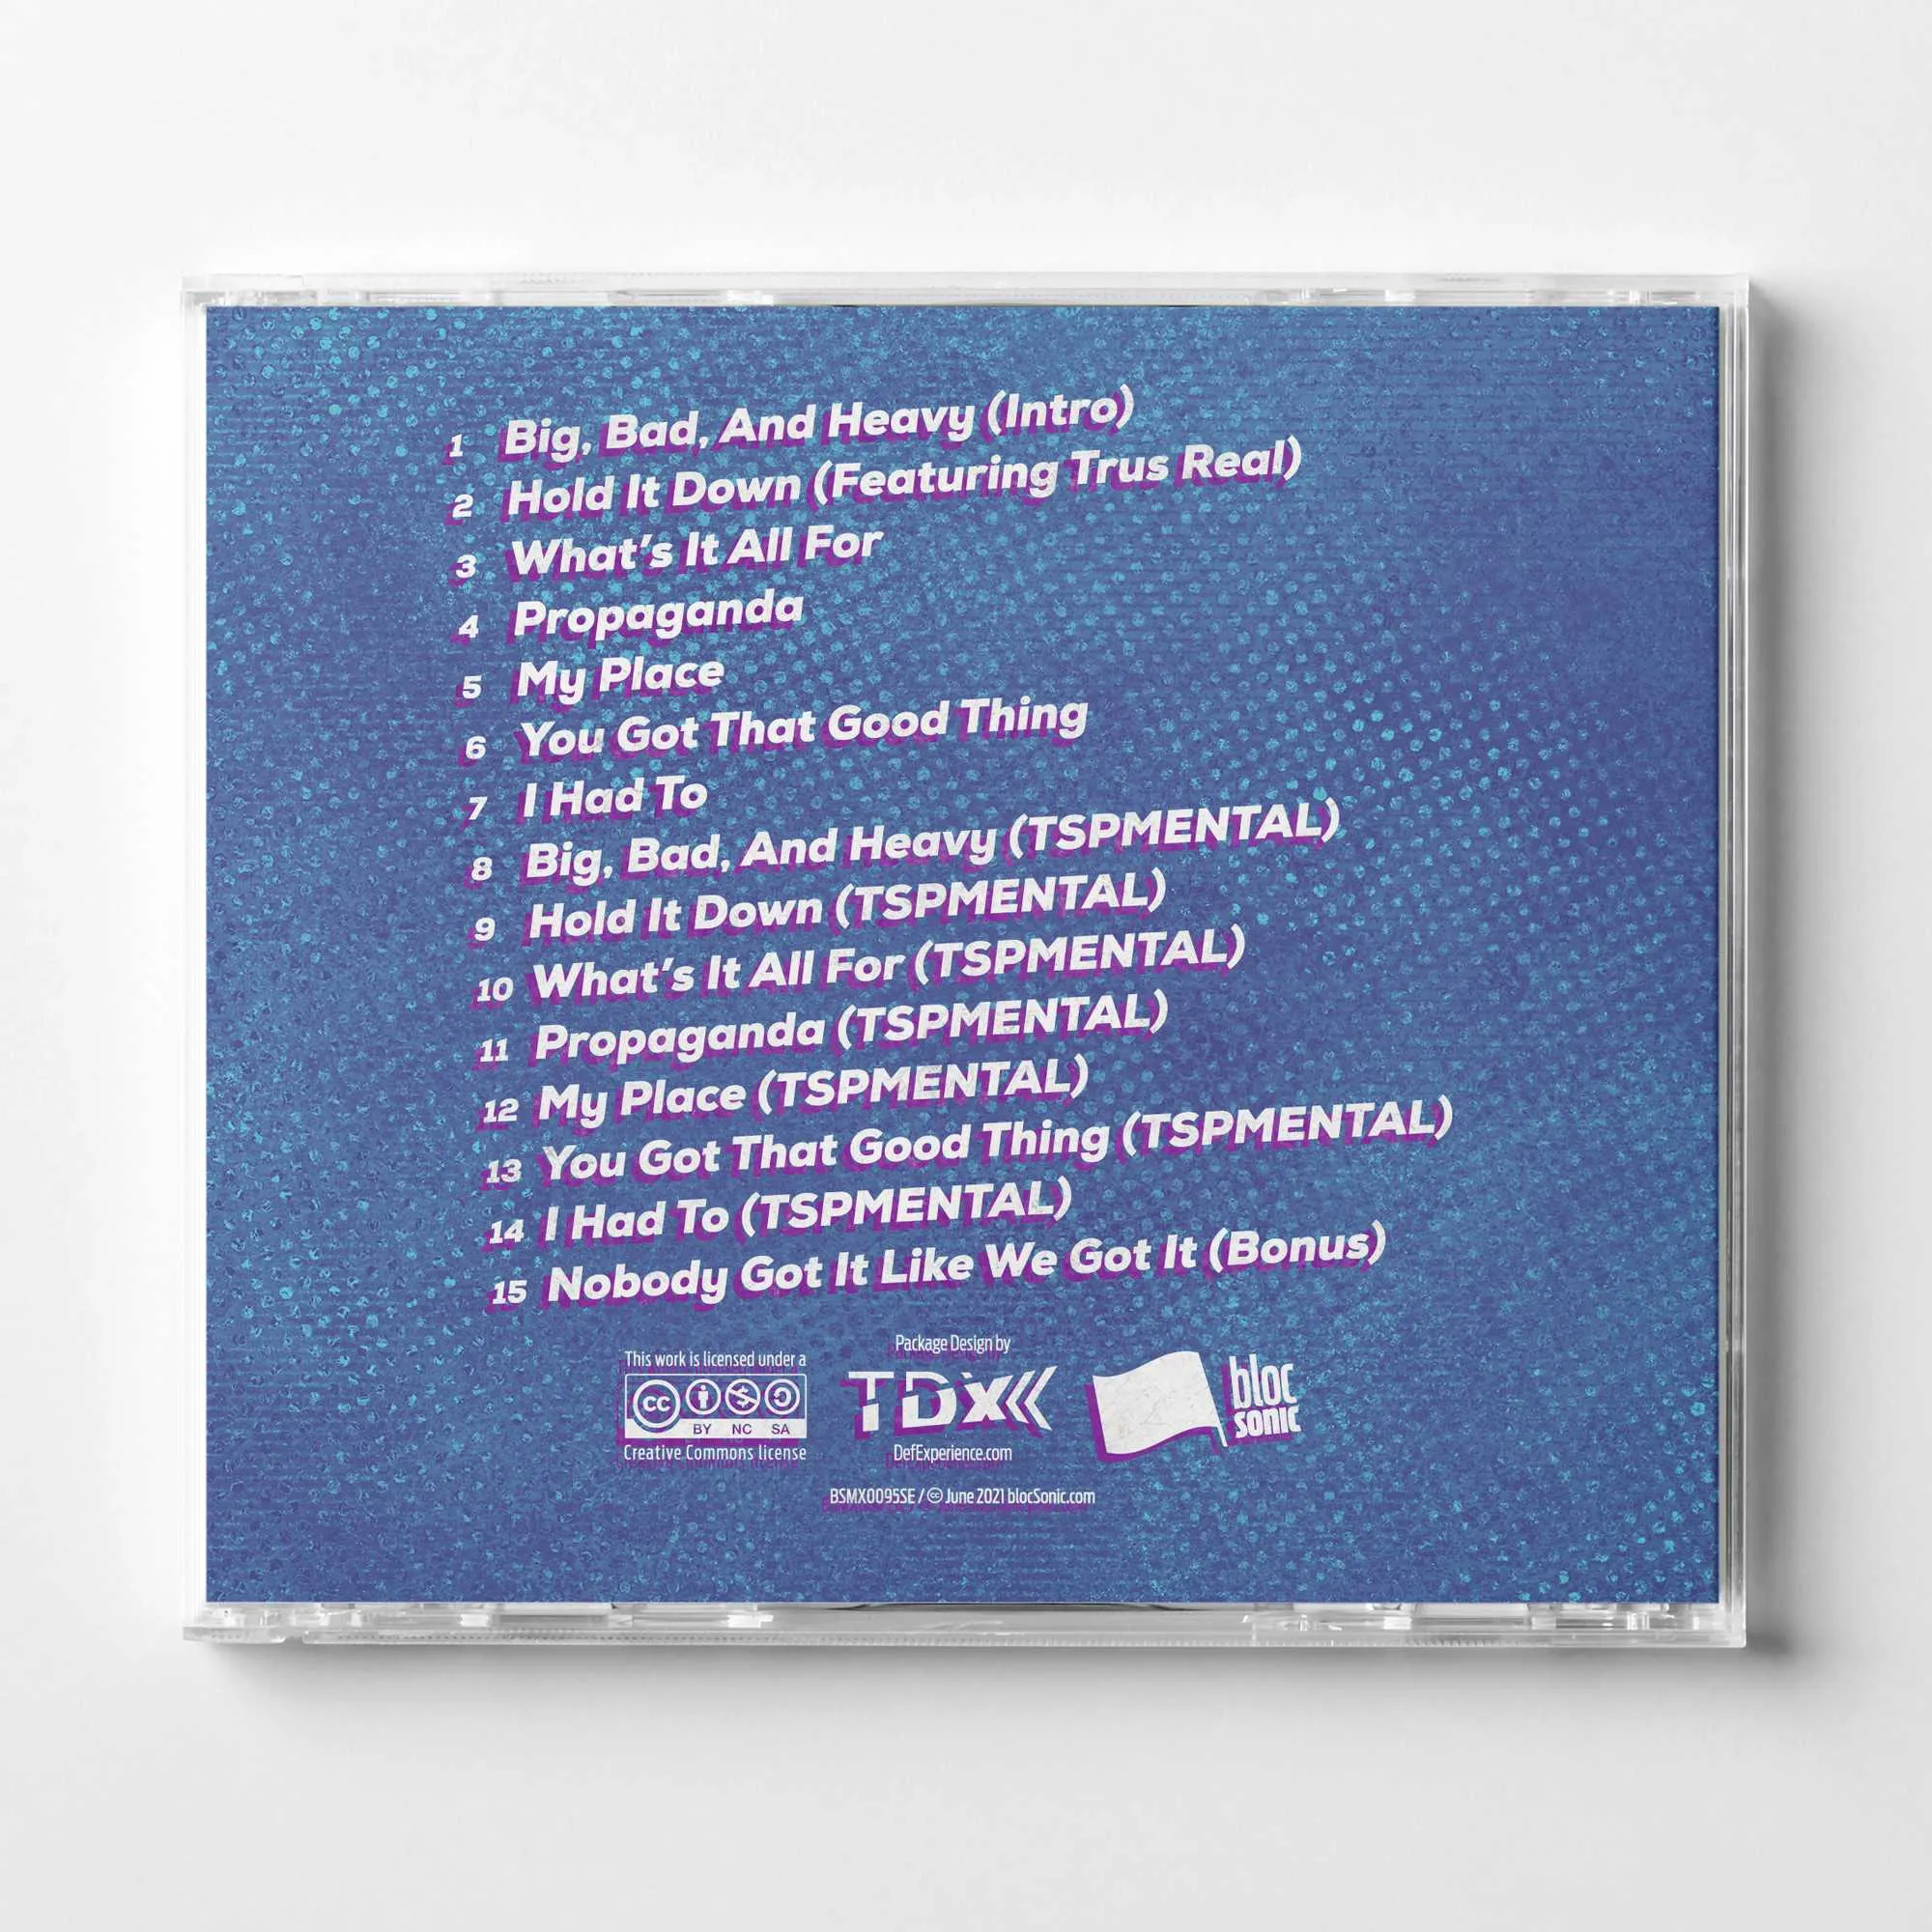 Album promo for “bloc Sonics: Tha TSPmentals” by CM &amp; Tha Silent Partner